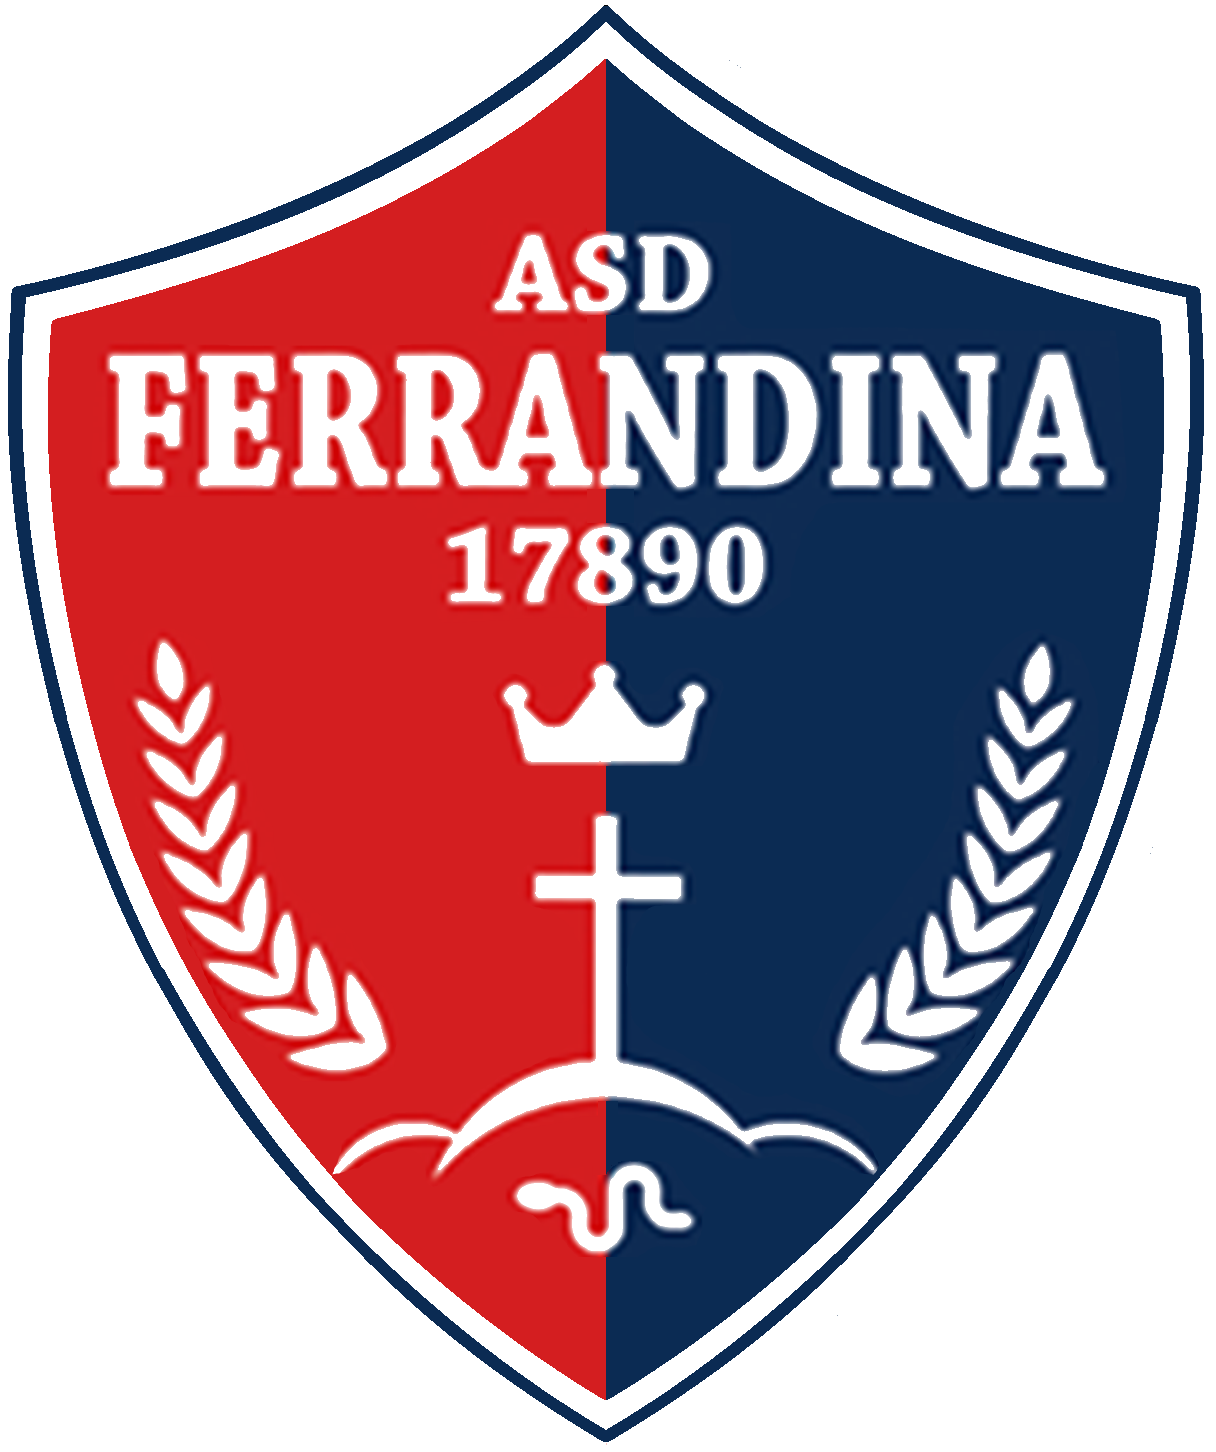 Wappen ASD Ferrandina 17890 diverse  106265